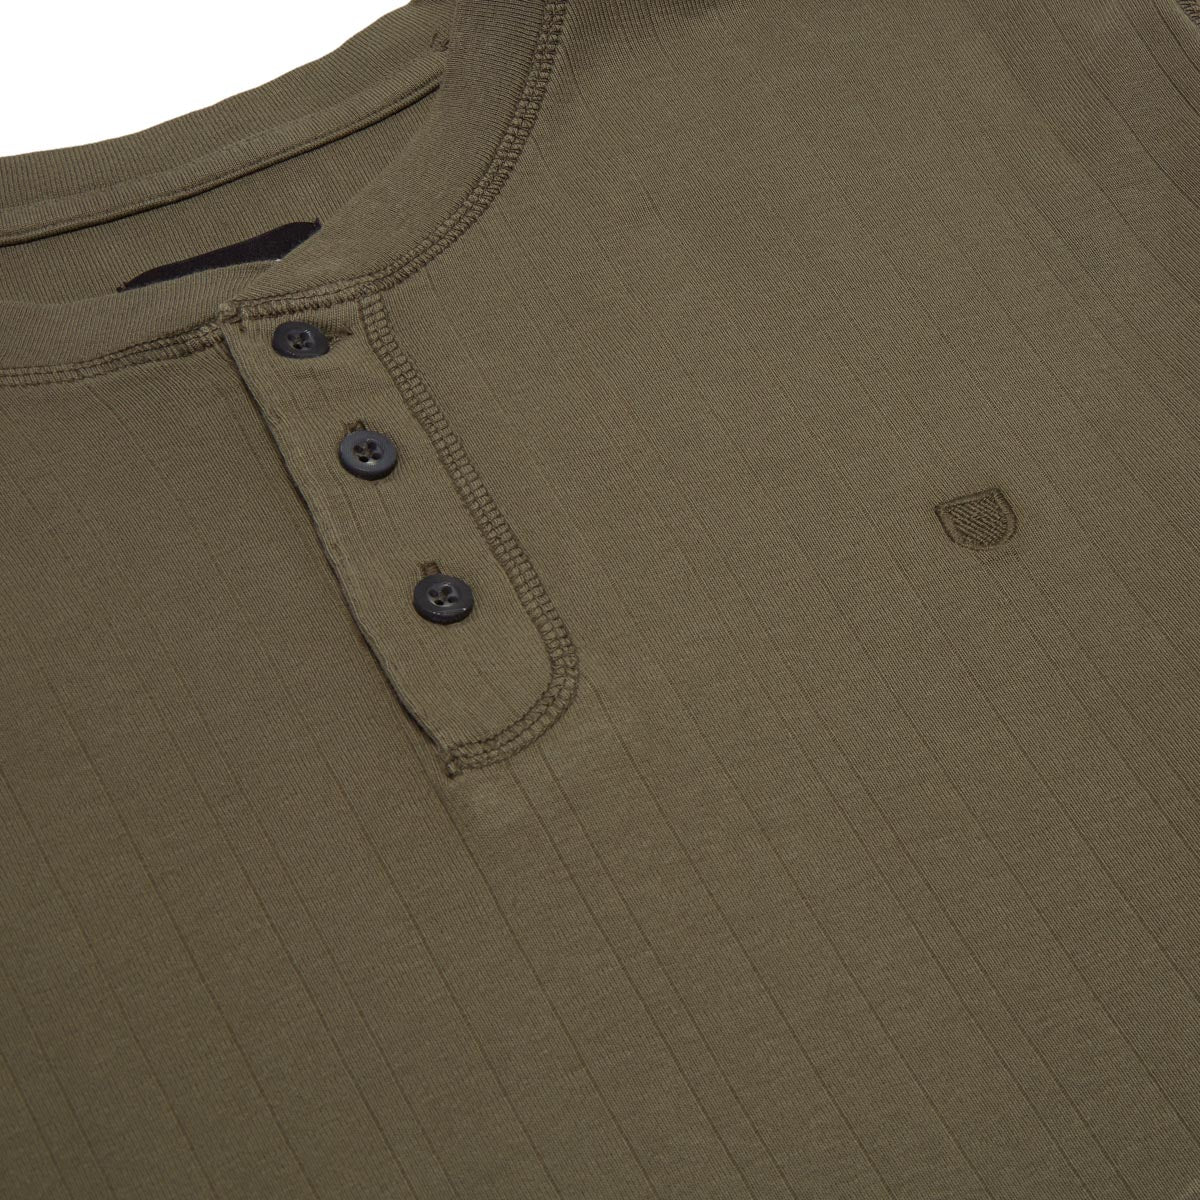 Brixton Wren Ribbed Henley Long Sleeve Shirt - Olive Surplus image 2